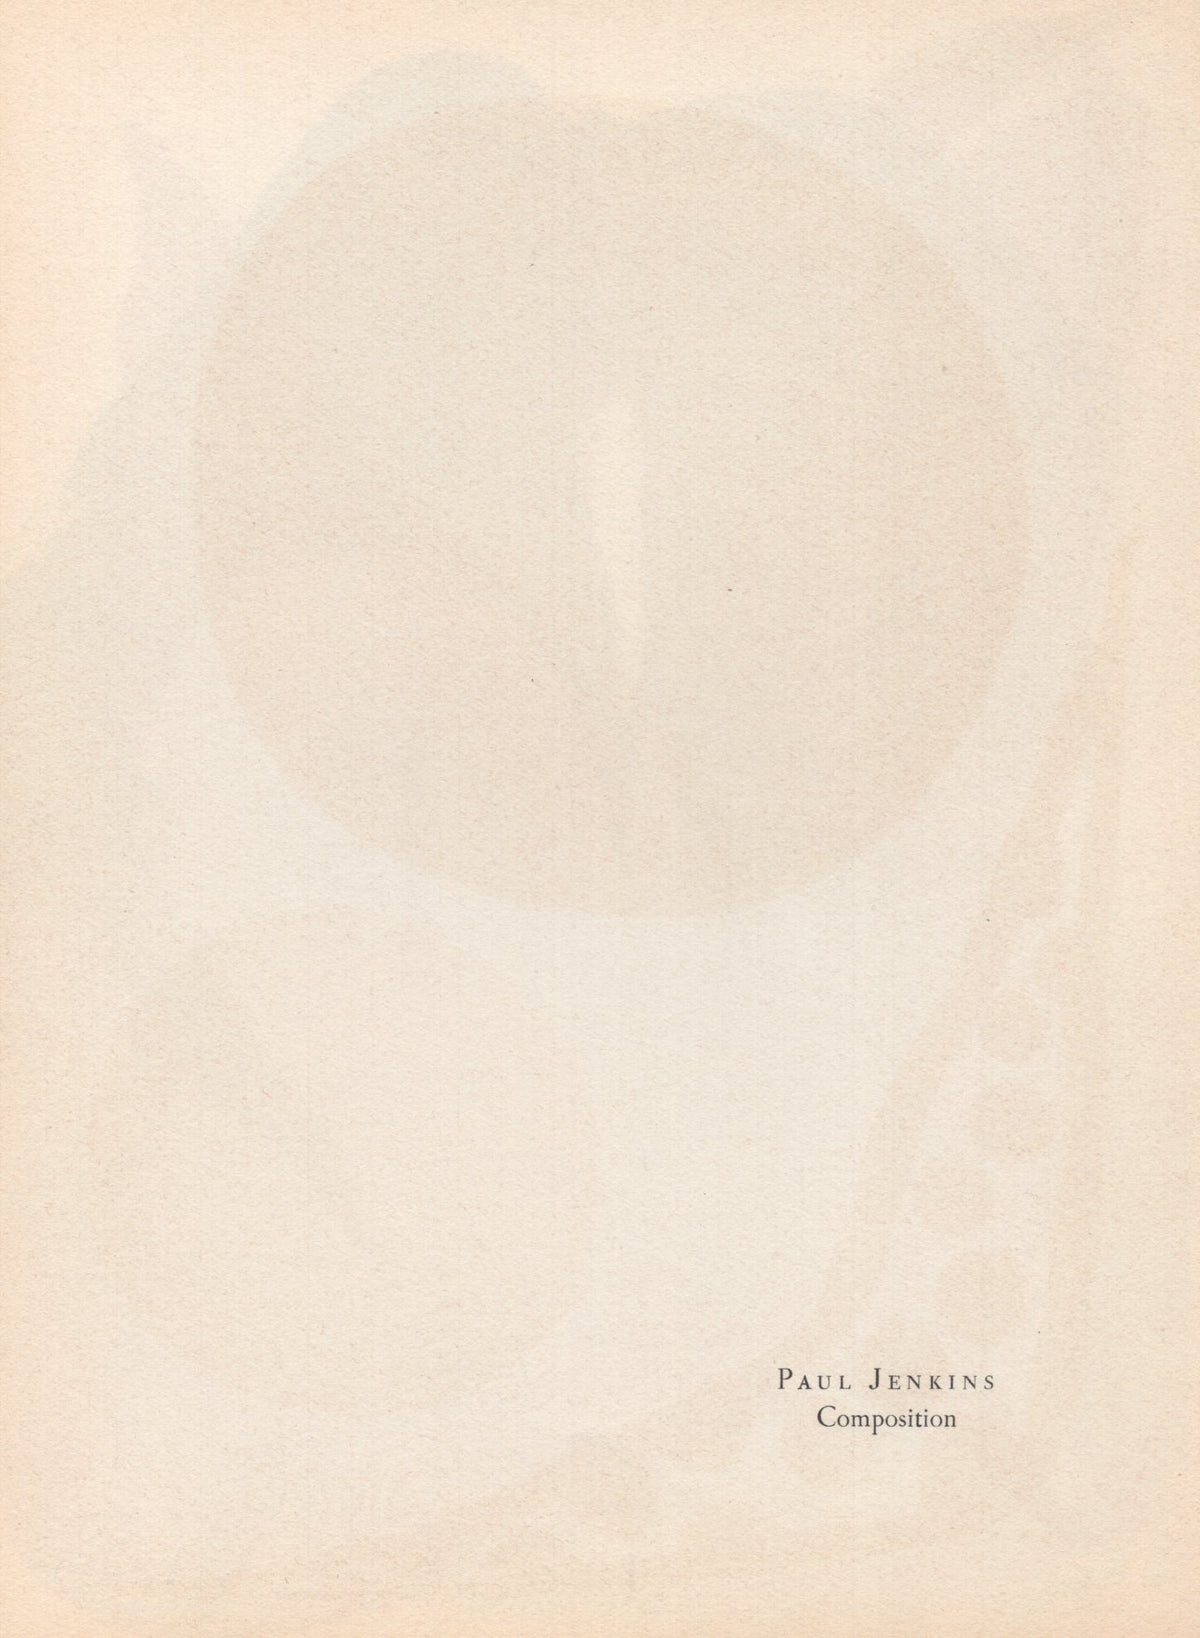 Paul Jenkins - &quot;Composition&quot; - Mourlot Press 1964 Lithograph - 7.5 x 10&quot;